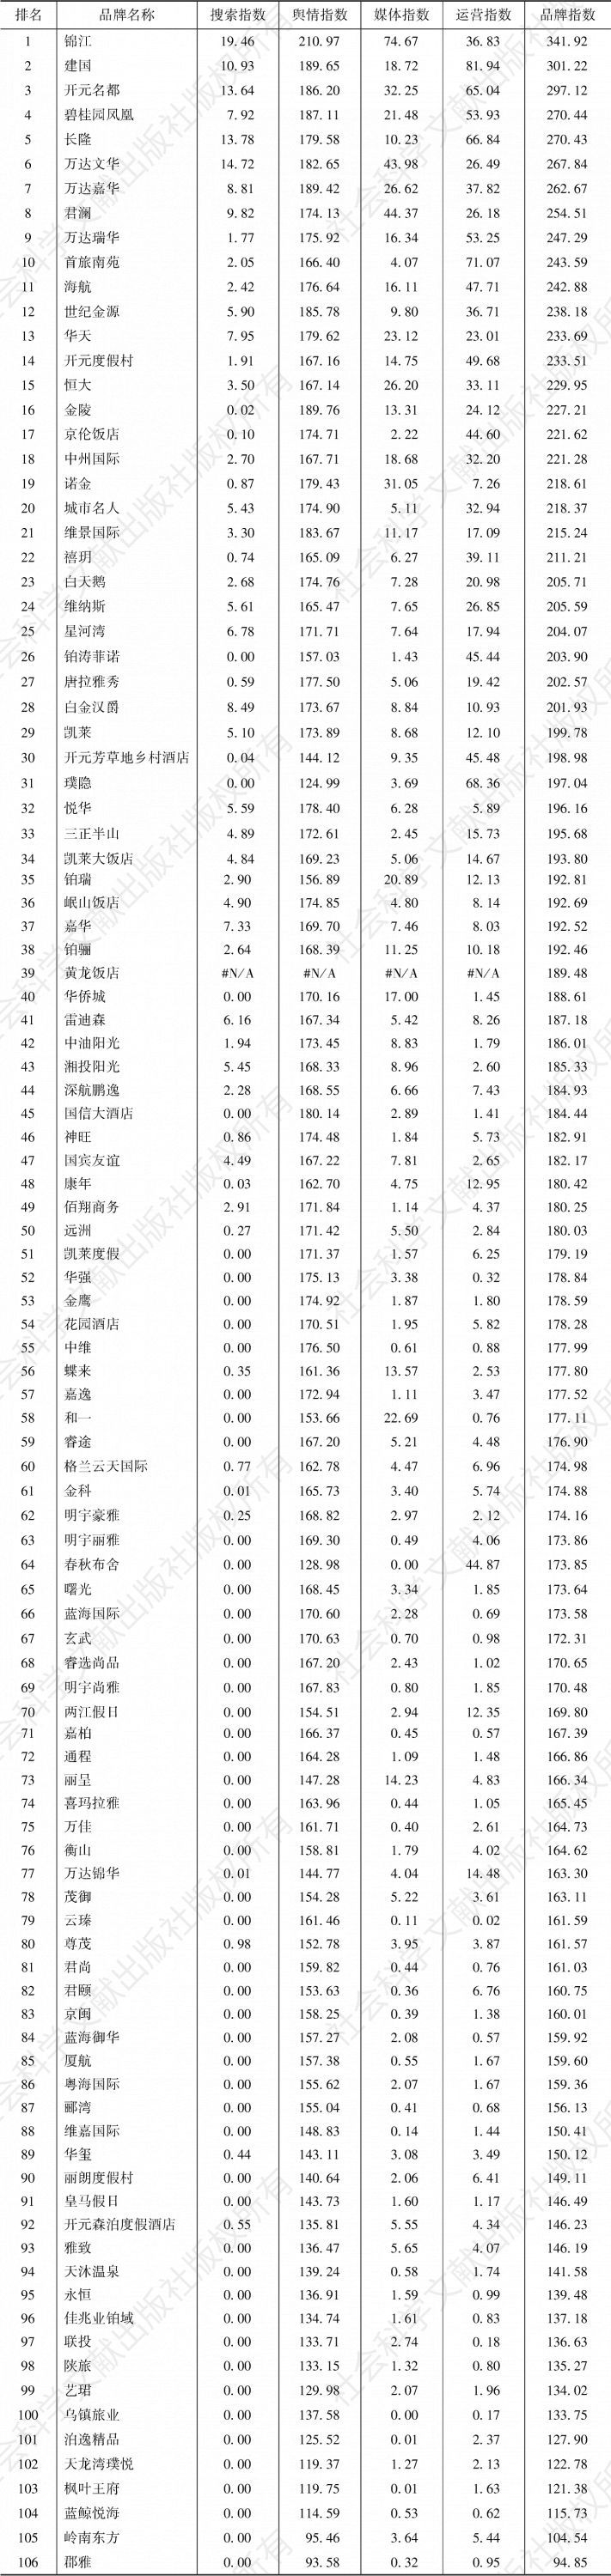 表2 2019年度中国旅游住宿业国内高端酒店品牌影响力完整榜单